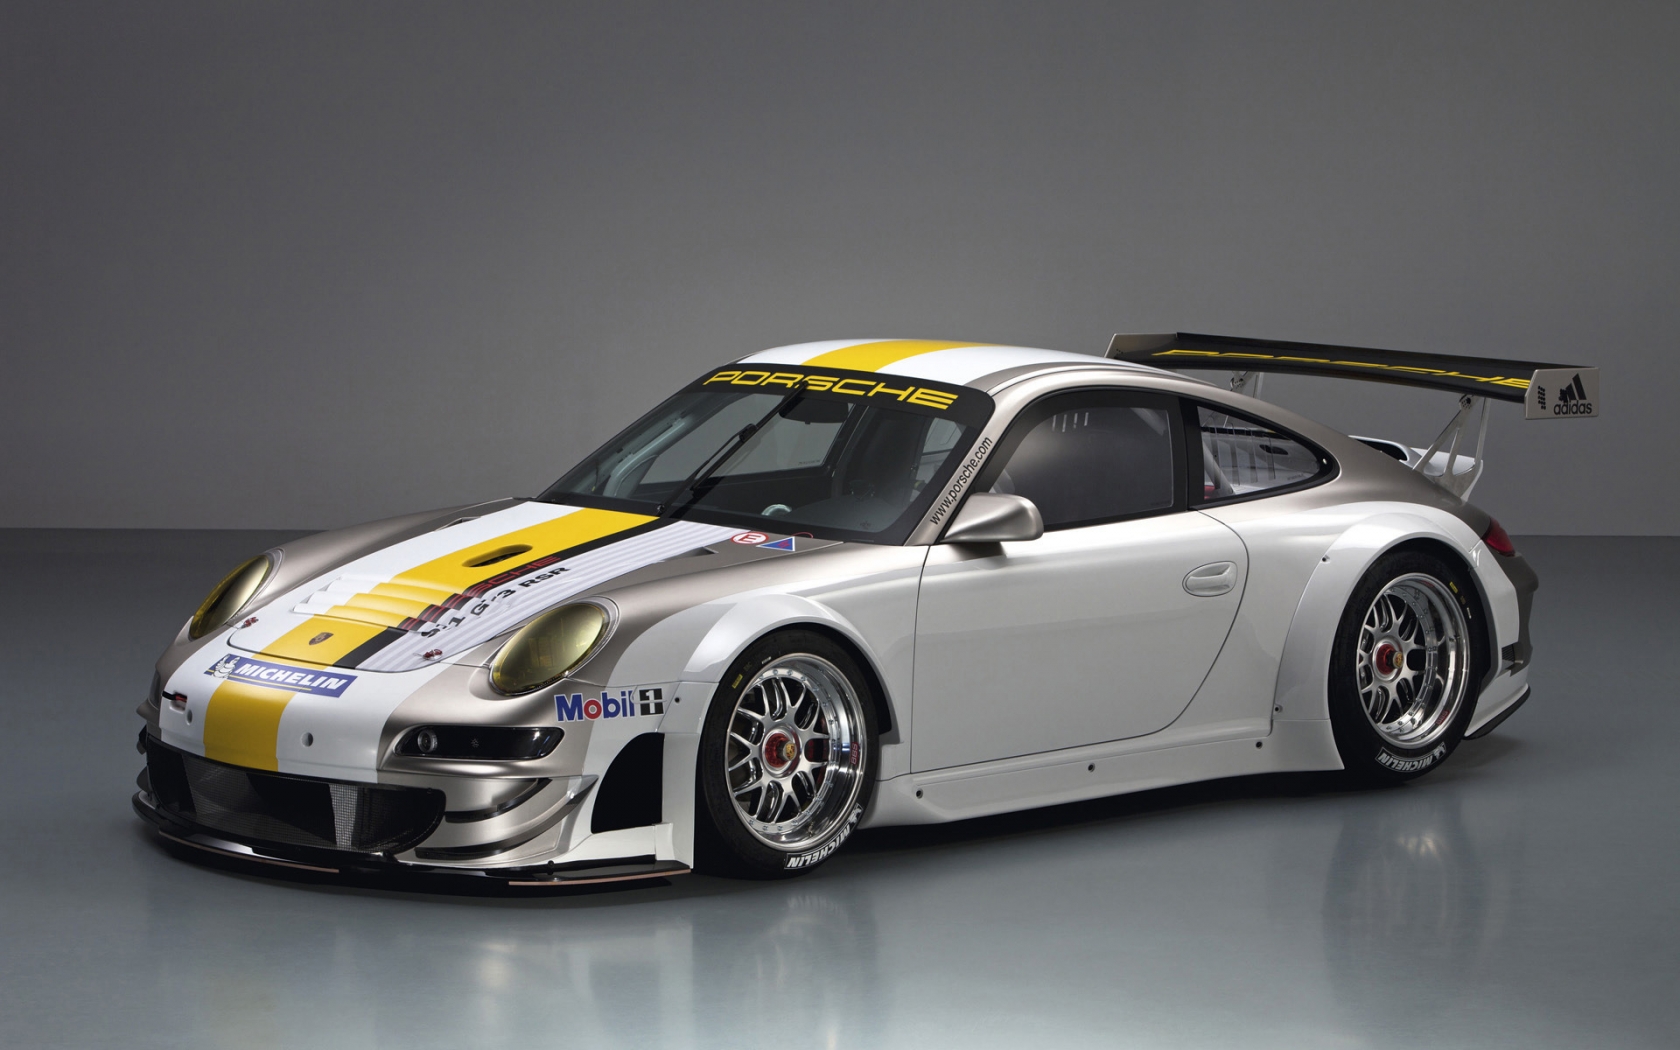 Porsche 911 GT3 RSR Studio for 1680 x 1050 widescreen resolution